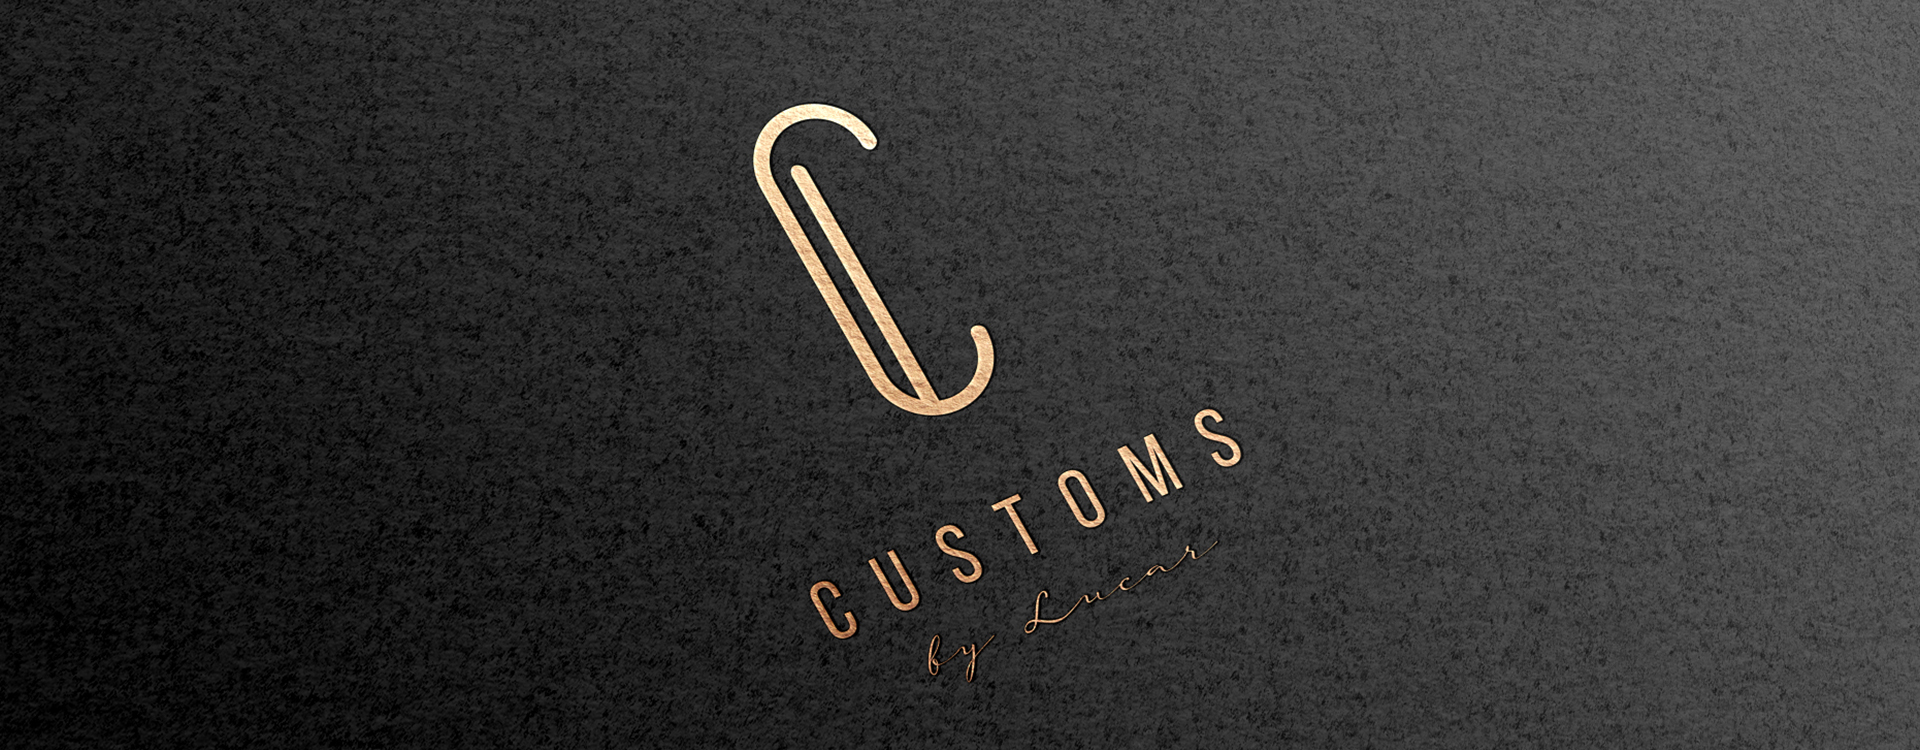 Customs by Lucas